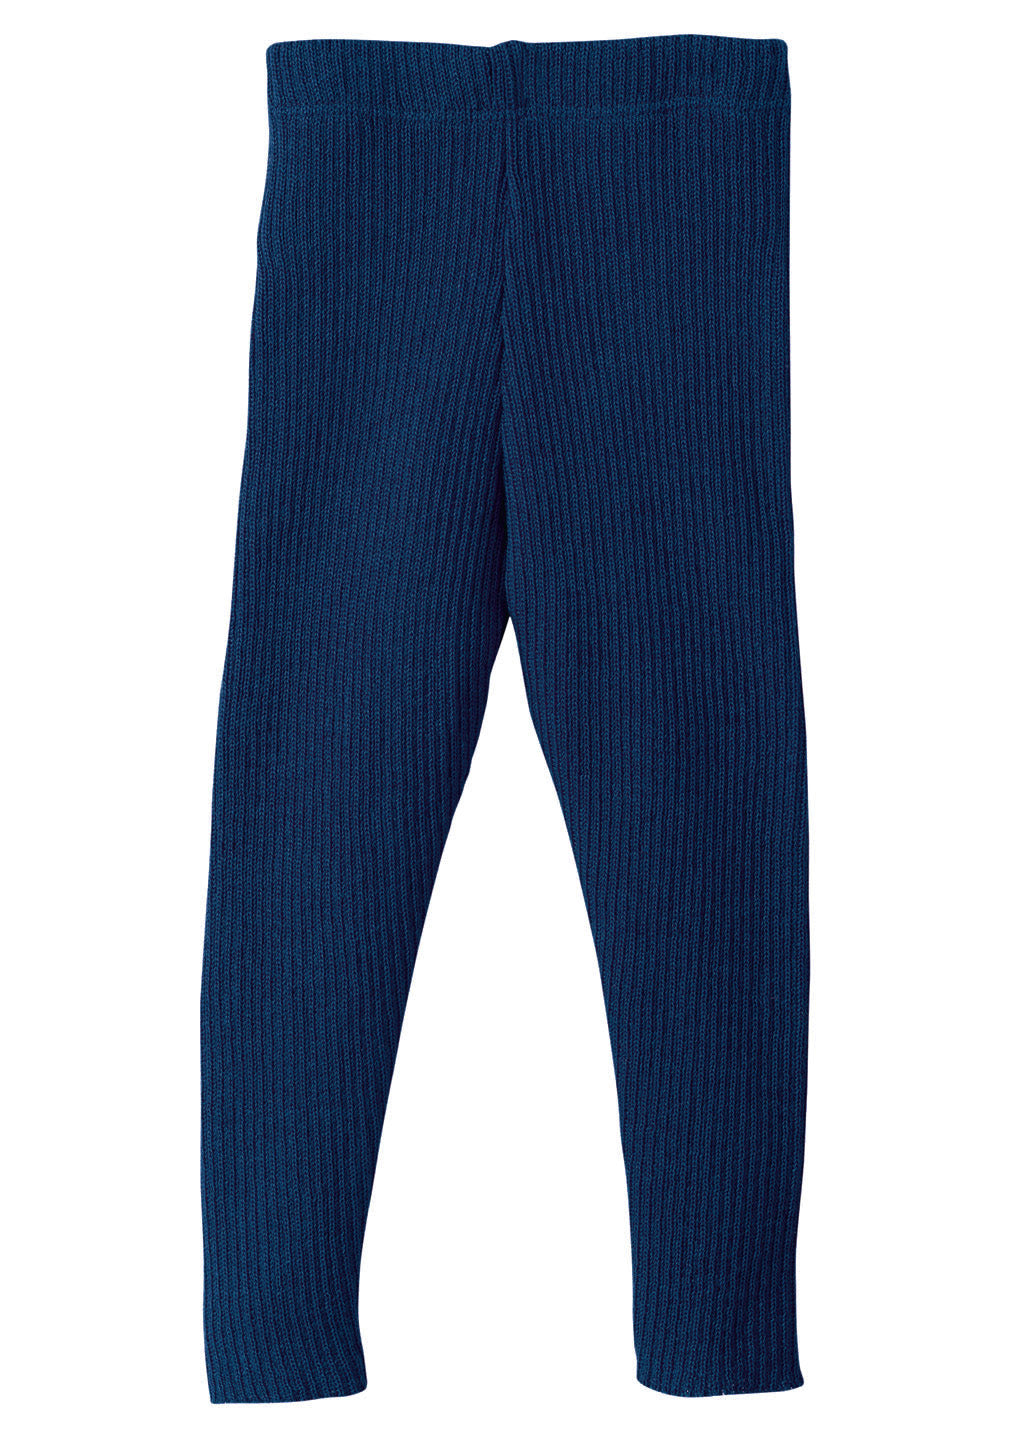 Engel Merino Wool/Silk Baby Leggings Natural/Navy - Merino Wool